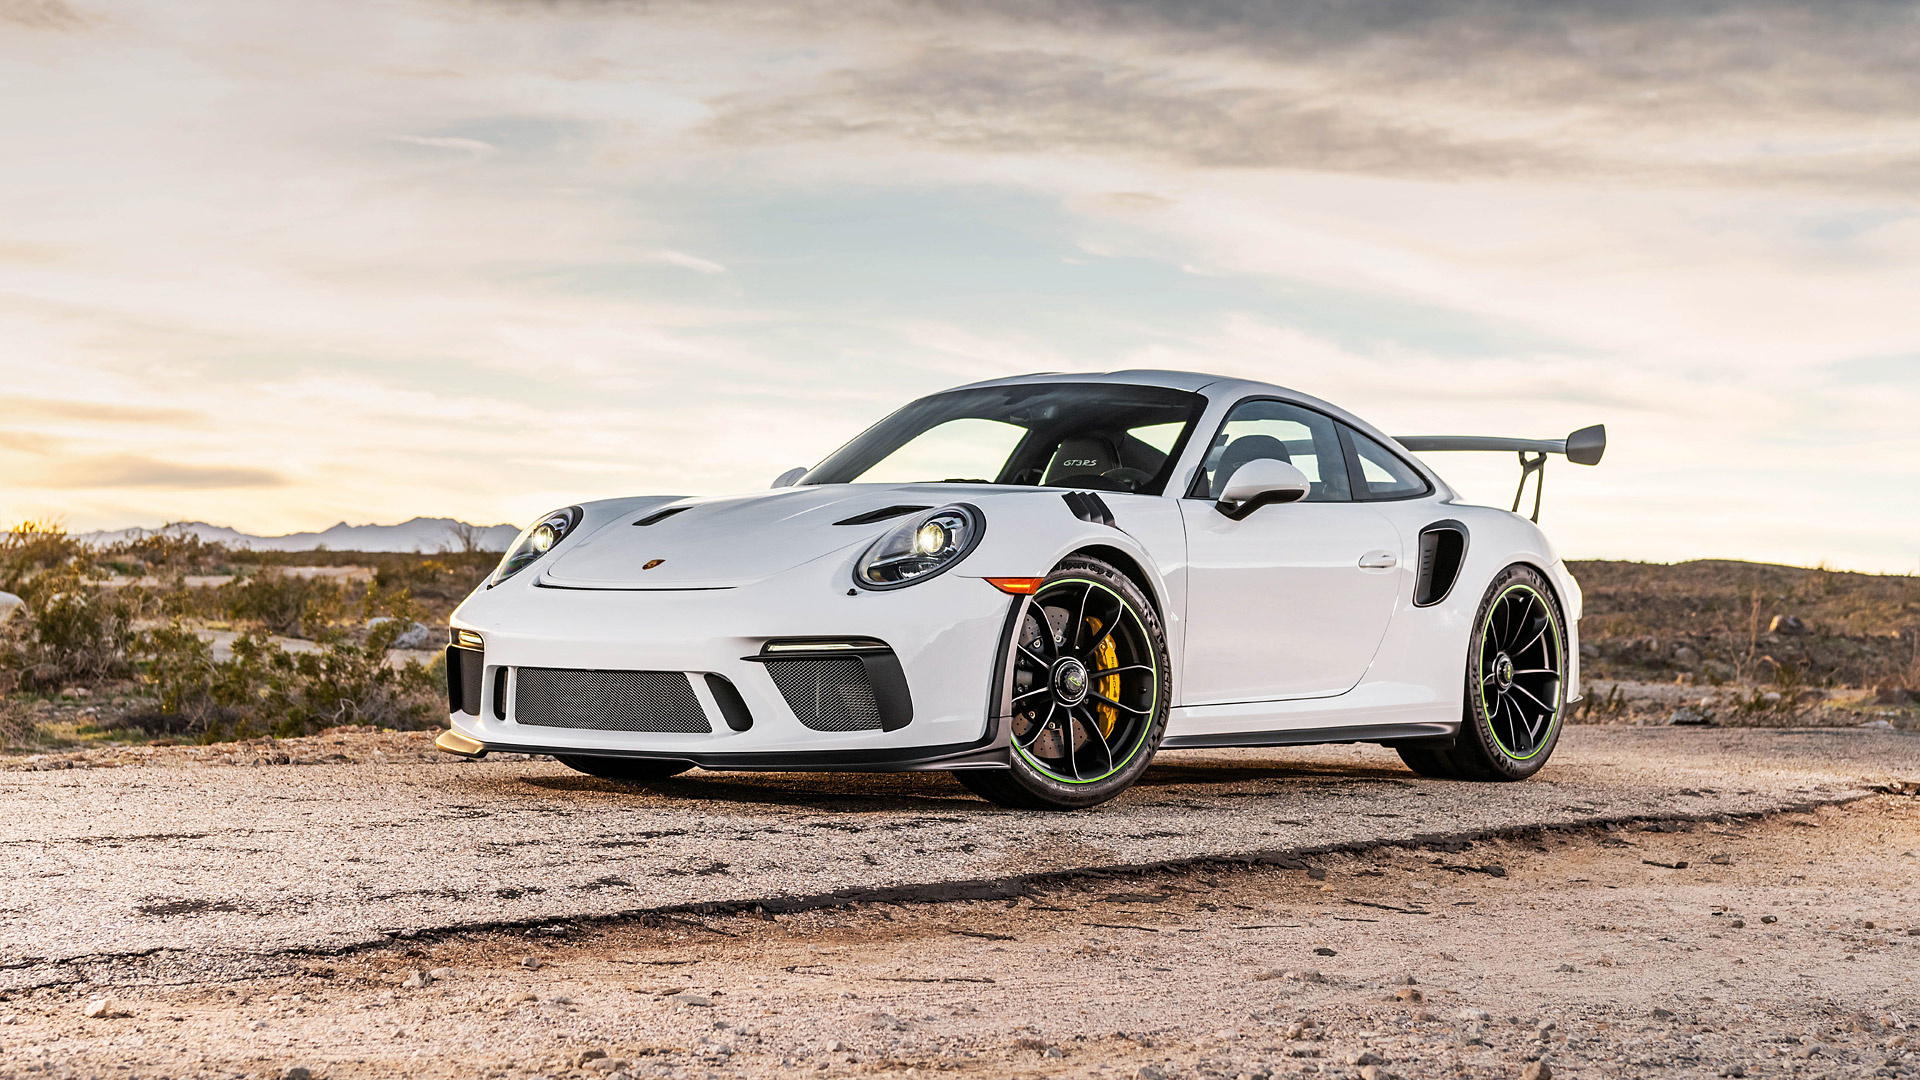 Porsche 911 Gt3 Rs 2019 , HD Wallpaper & Backgrounds